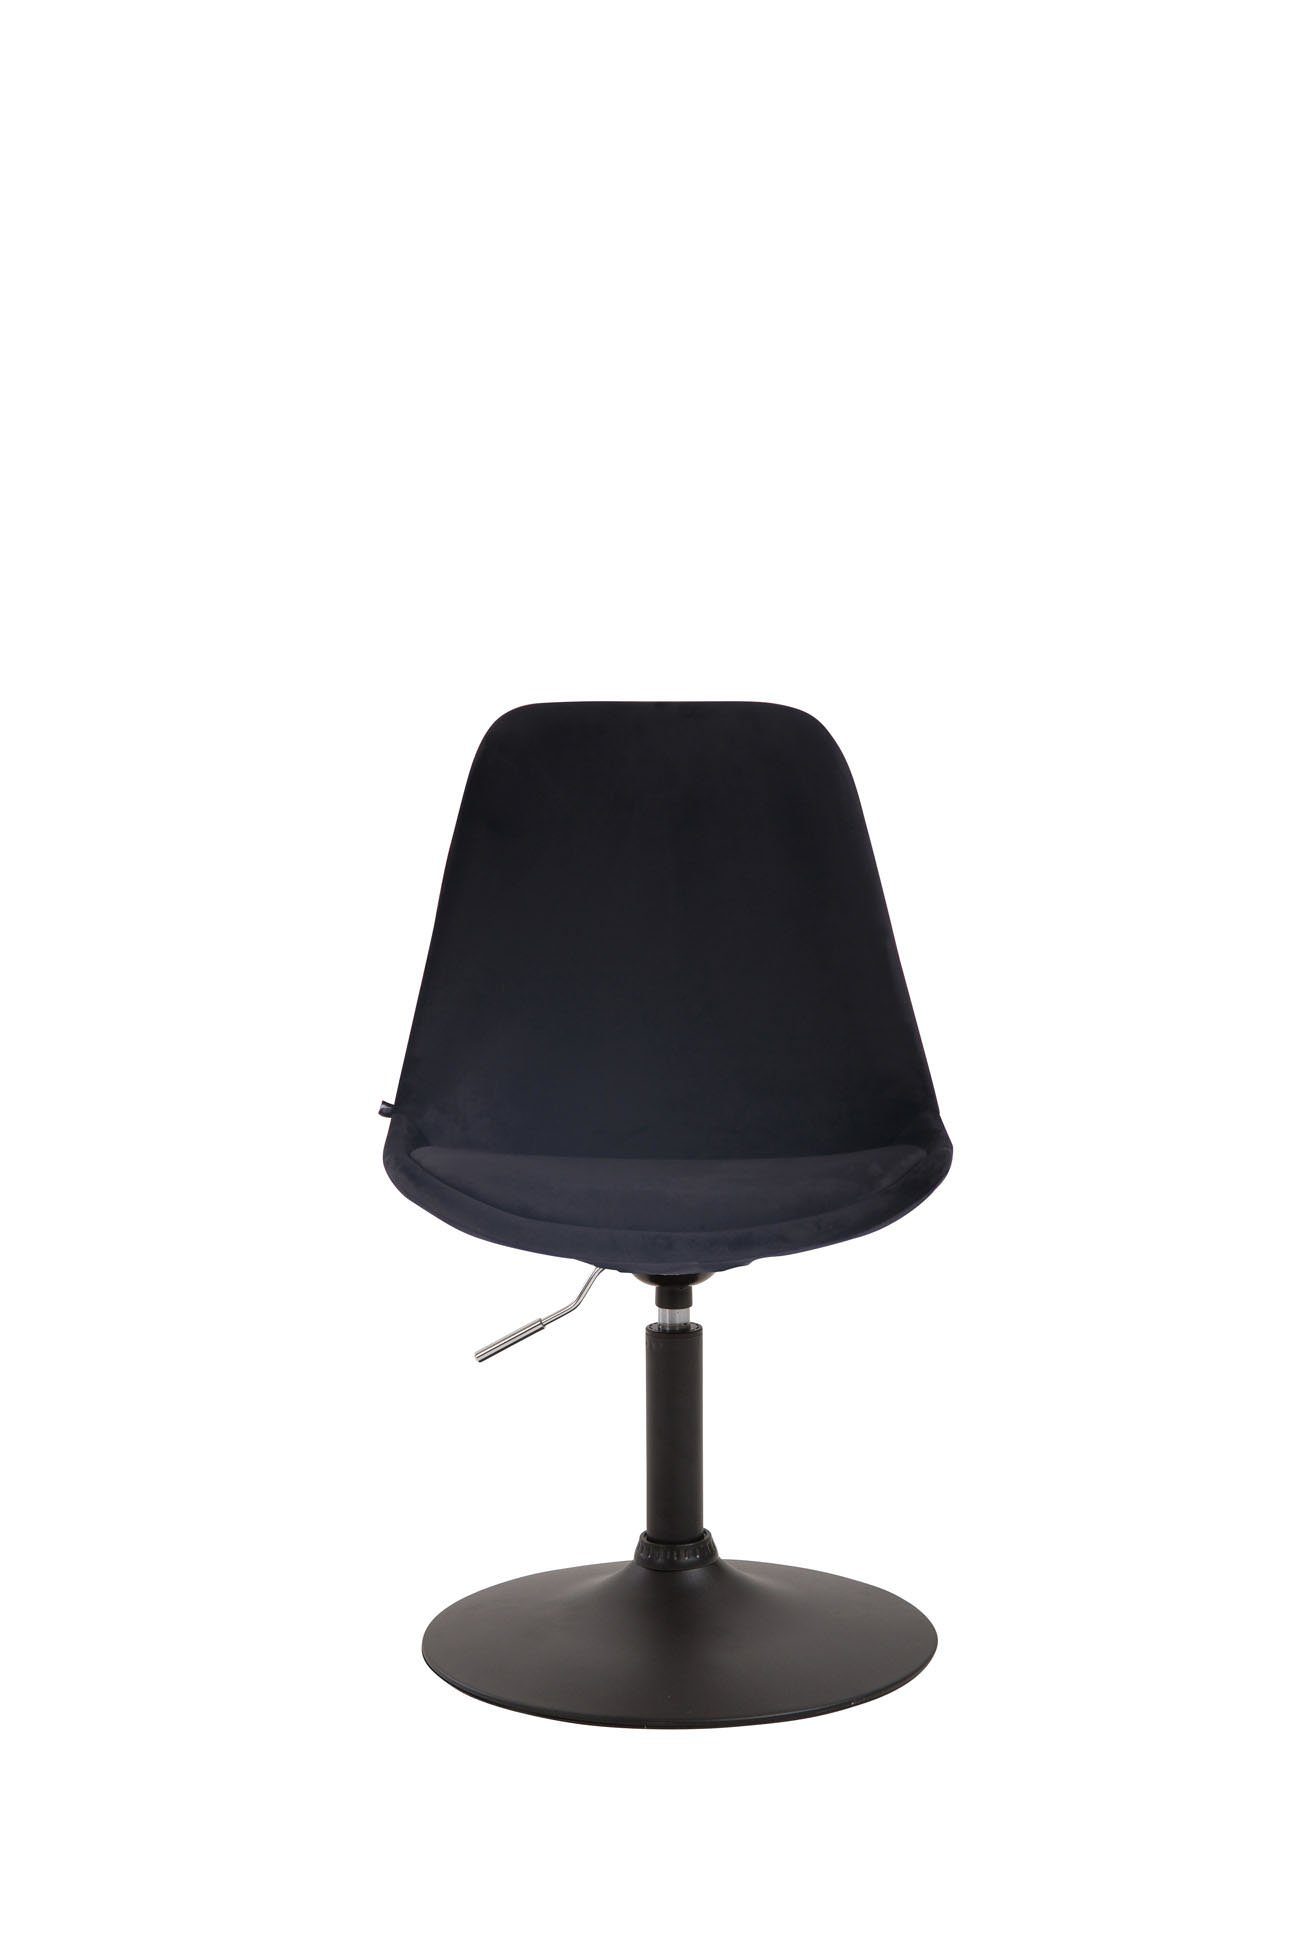 mit - - Esszimmerstuhl Samt Gestell: (Küchenstuhl TPFLiving Wohnzimmerstuhl - Mavic Konferenzstuhl Sitzfläche: Sitzfläche hochwertig schwarz - - Metall Esstischstuhl Polsterstuhl), schwarz gepolsterter